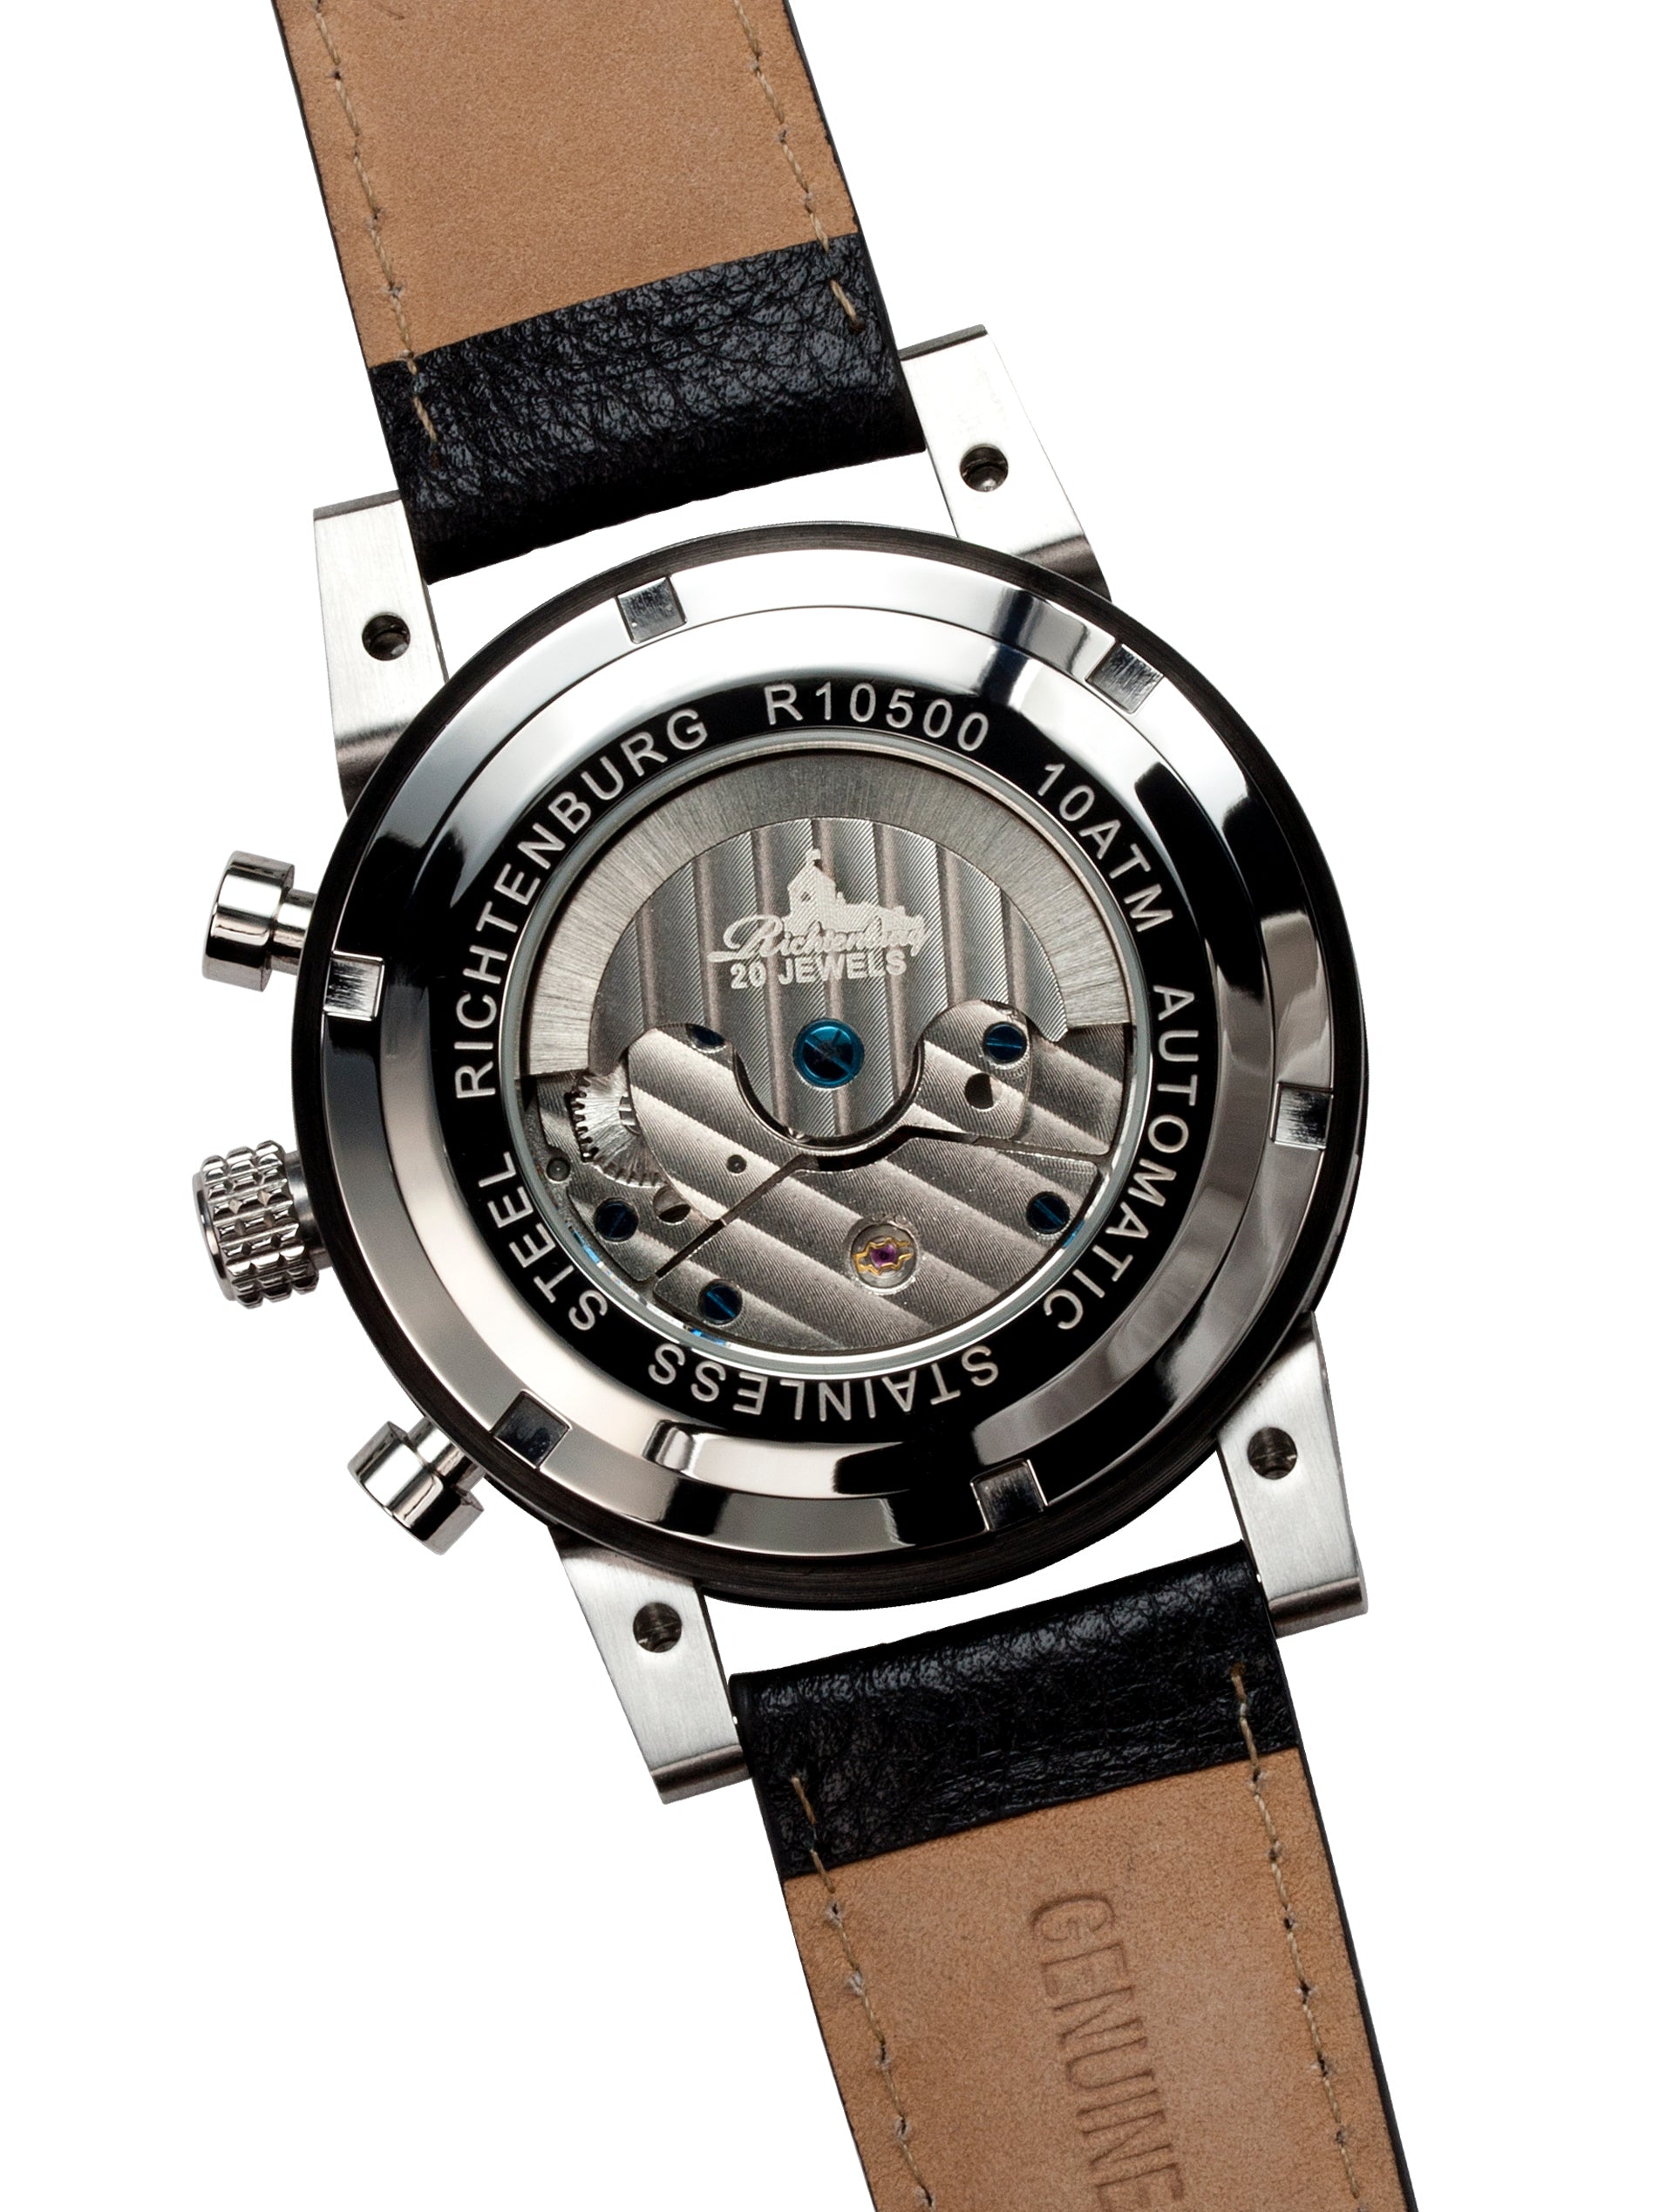 Automatic watches — Newport — Richtenburg — black